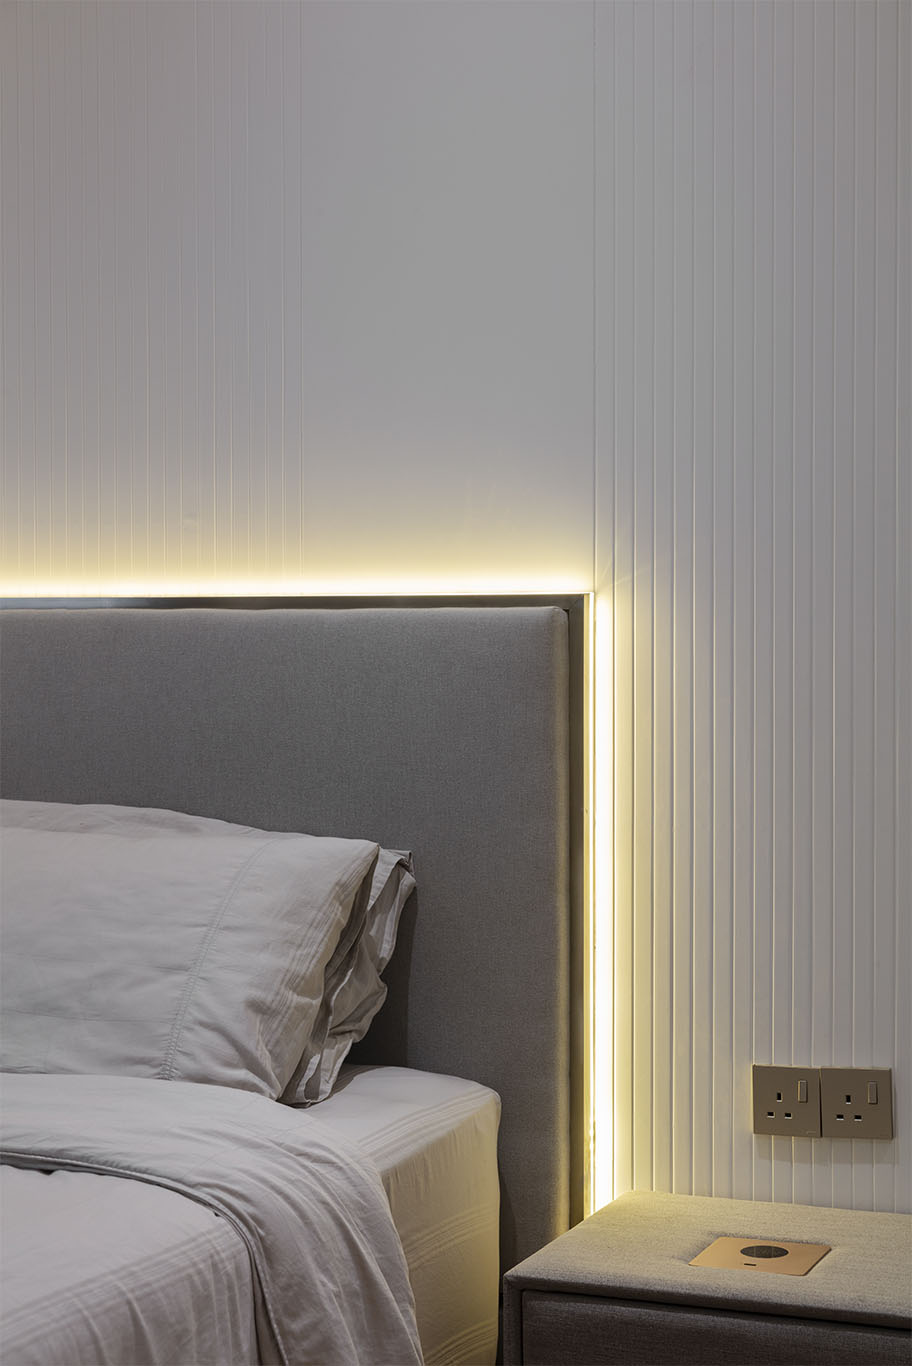 MIEUX La Famillie De Lee grey color bed frame with hidden light behind bed frame mieux interior design